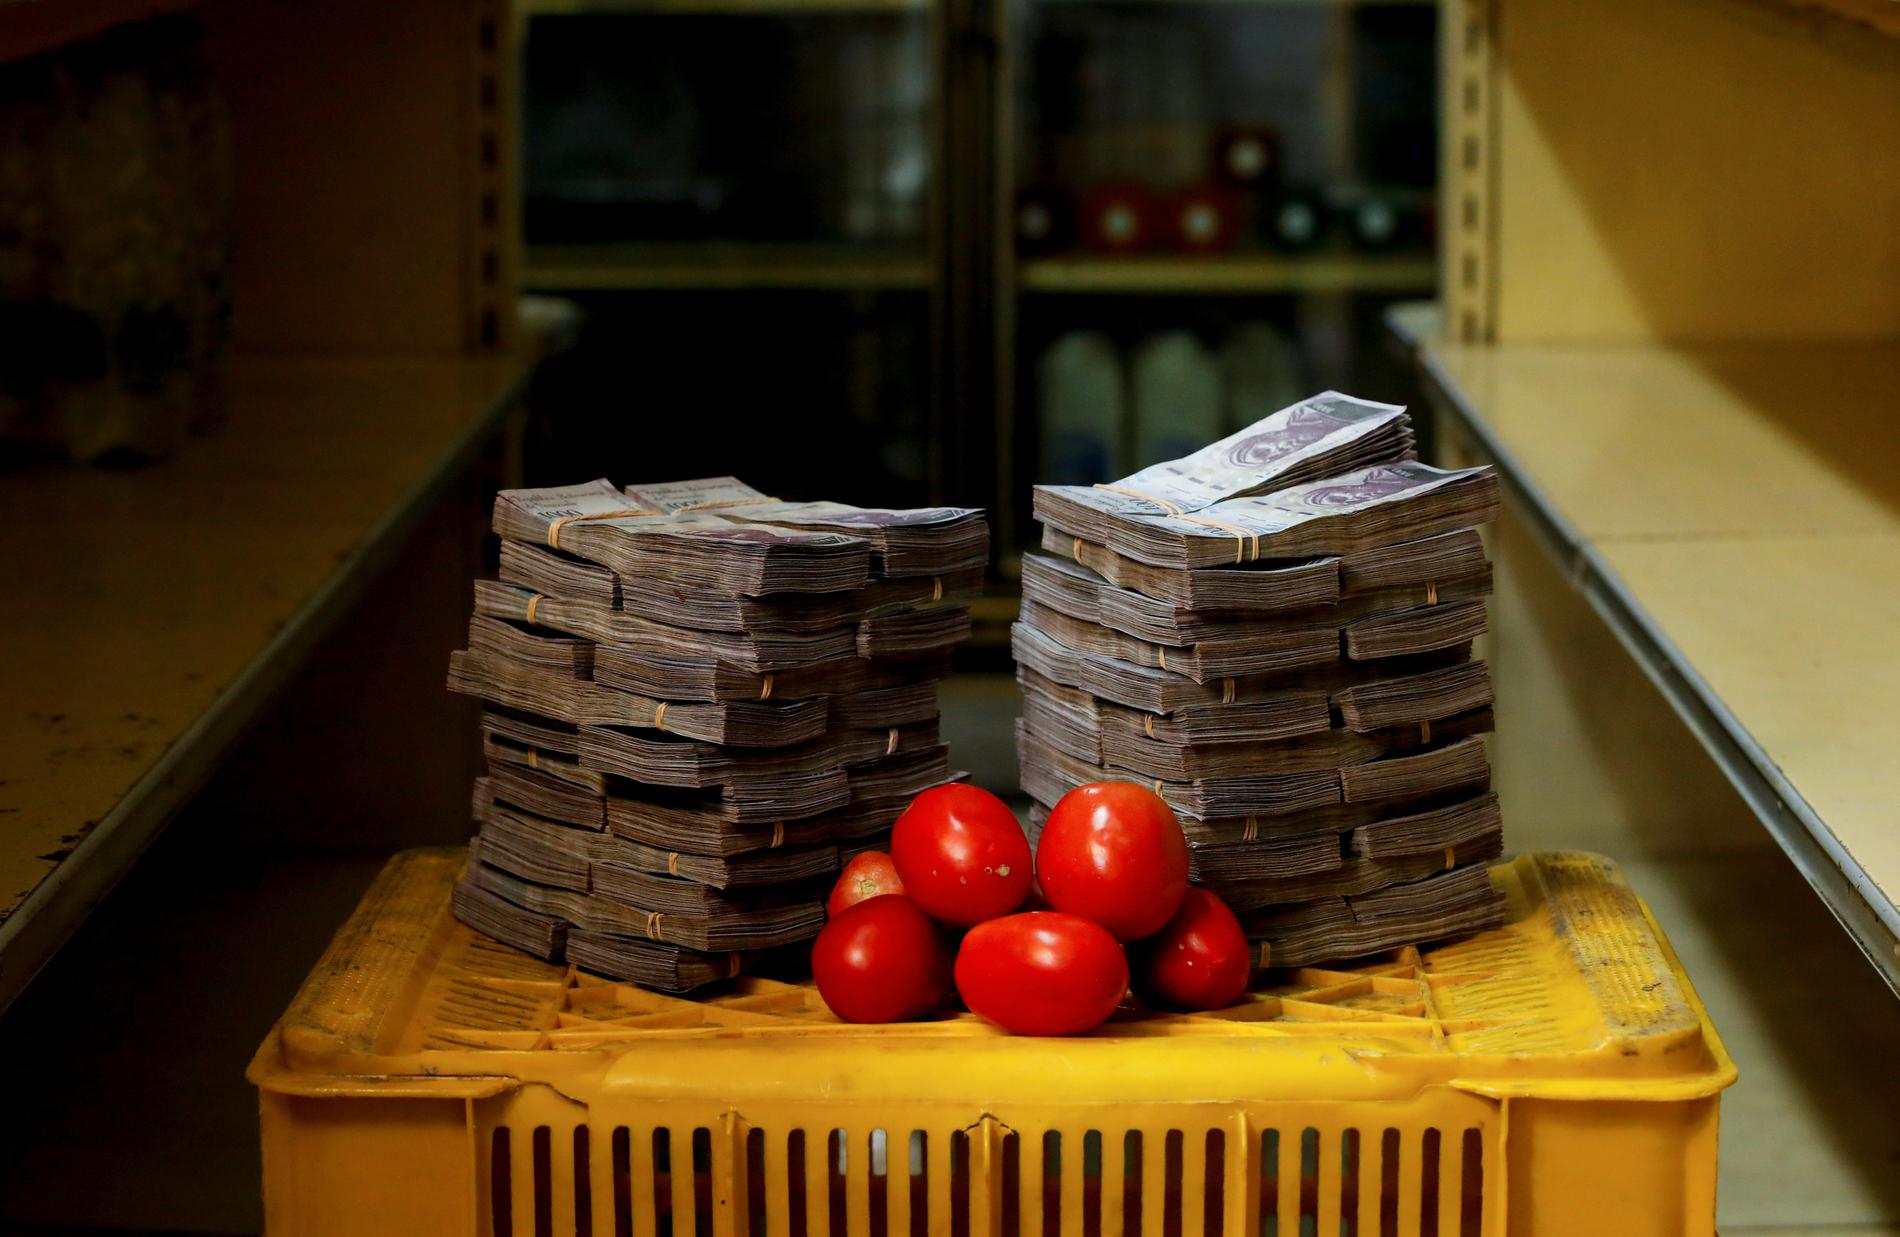 Priset för ett kilo tomater i Venezuela är fem miljoner bolivares. Foto: Carlos Garcia Rawlins